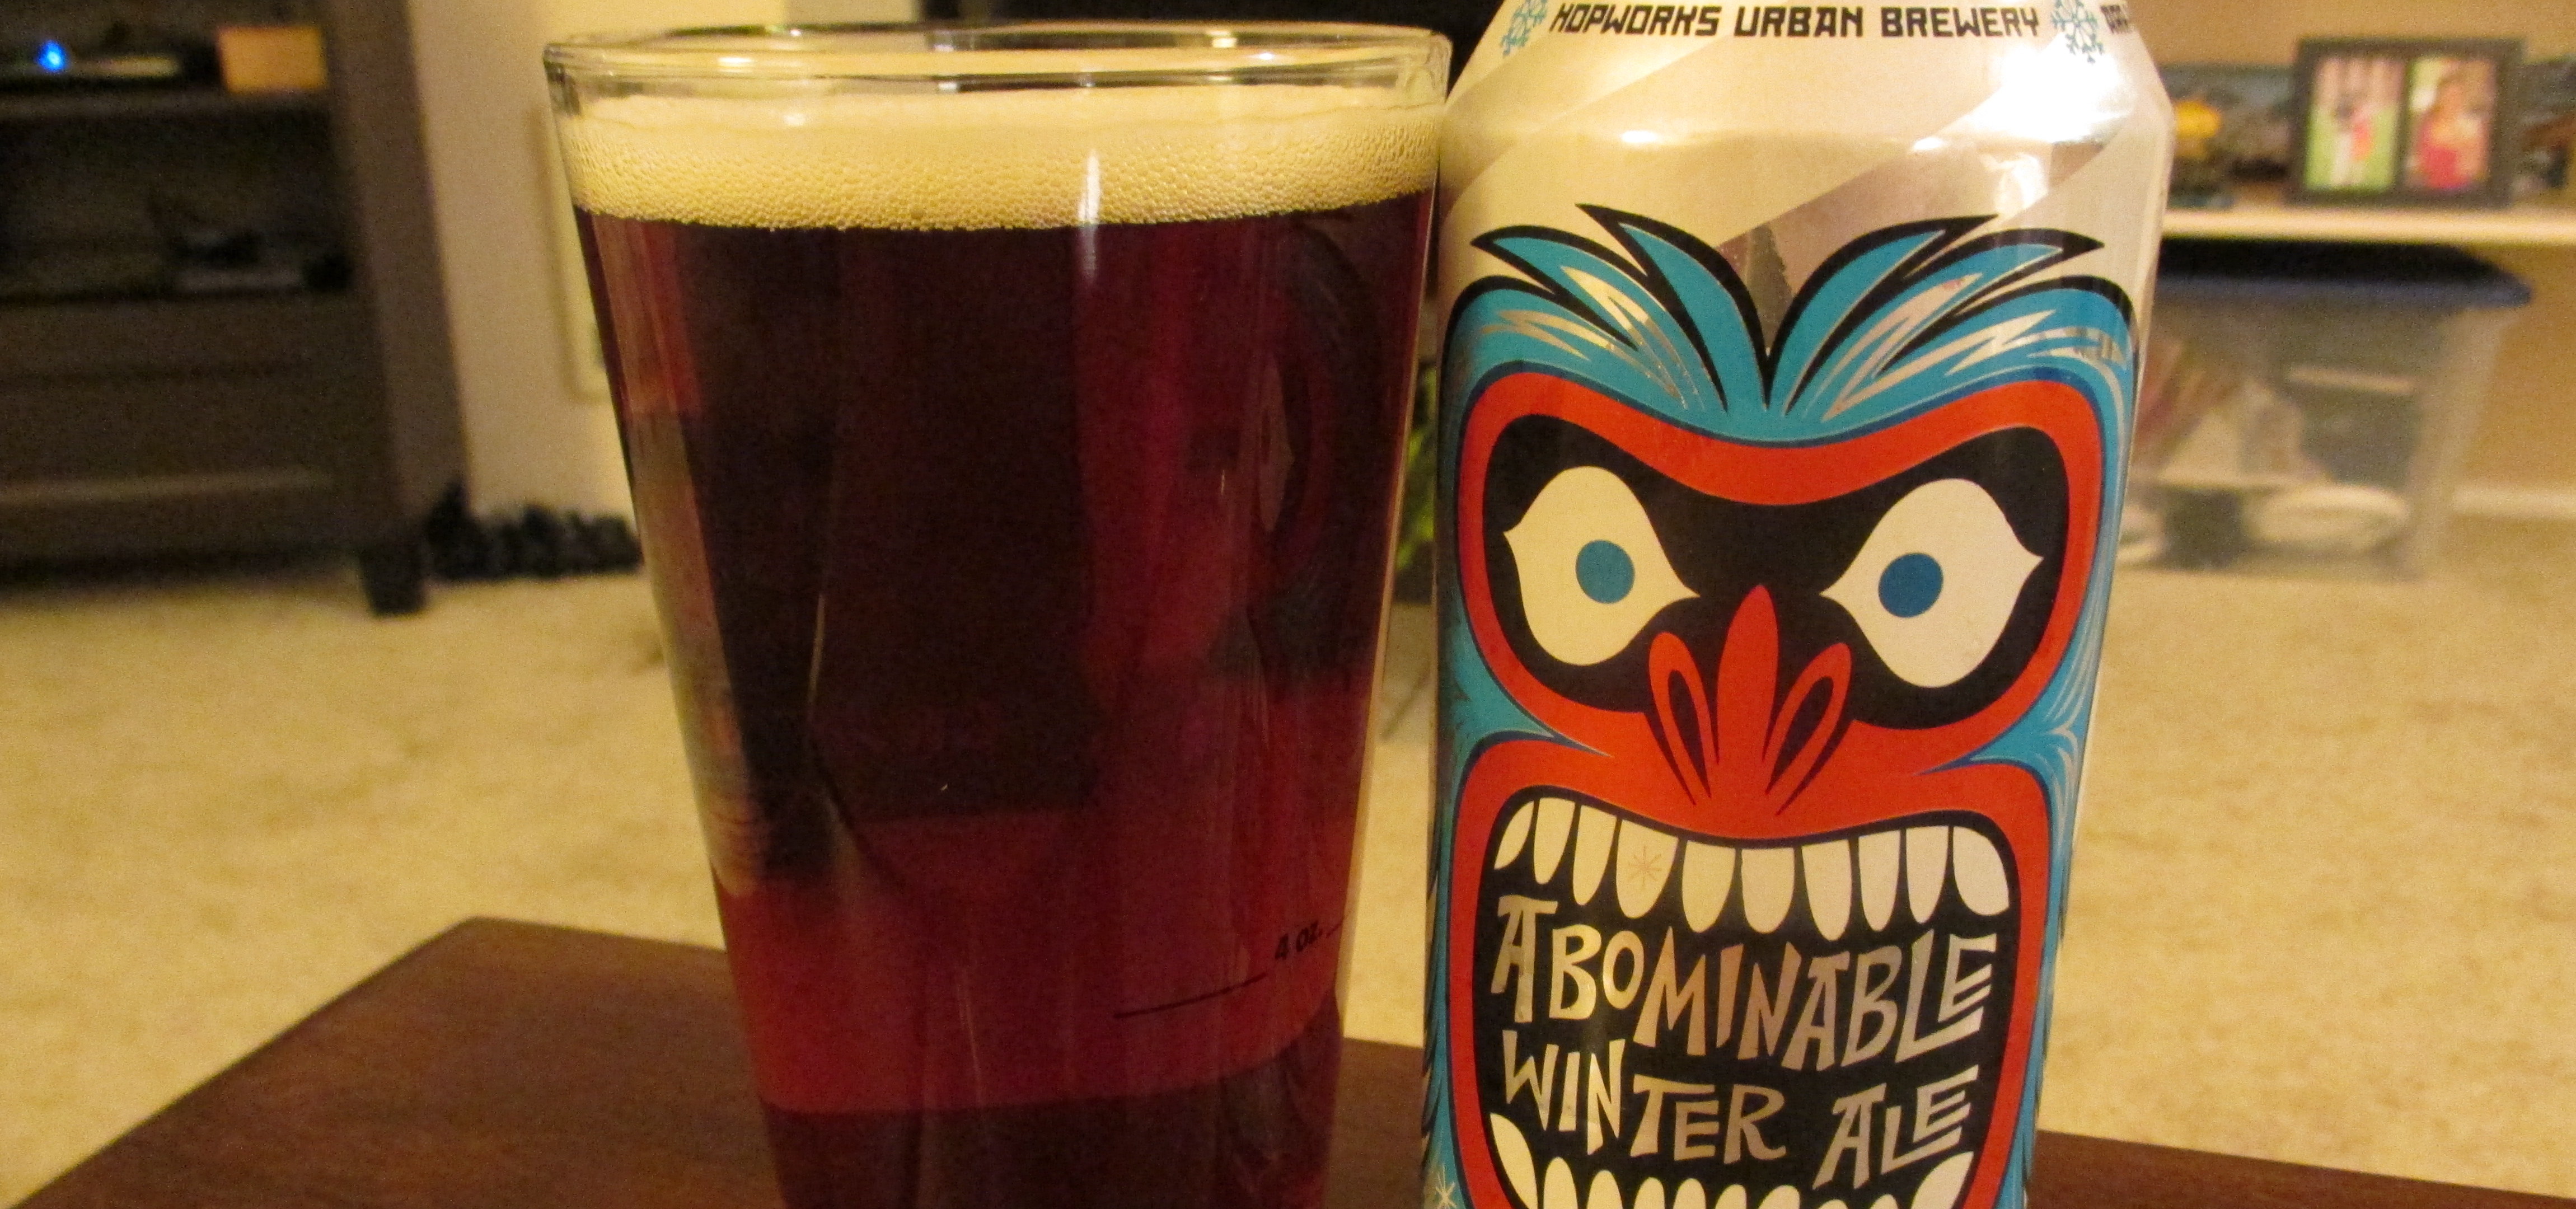 Hopworks Urban Brewery – Abominable Winter Ale